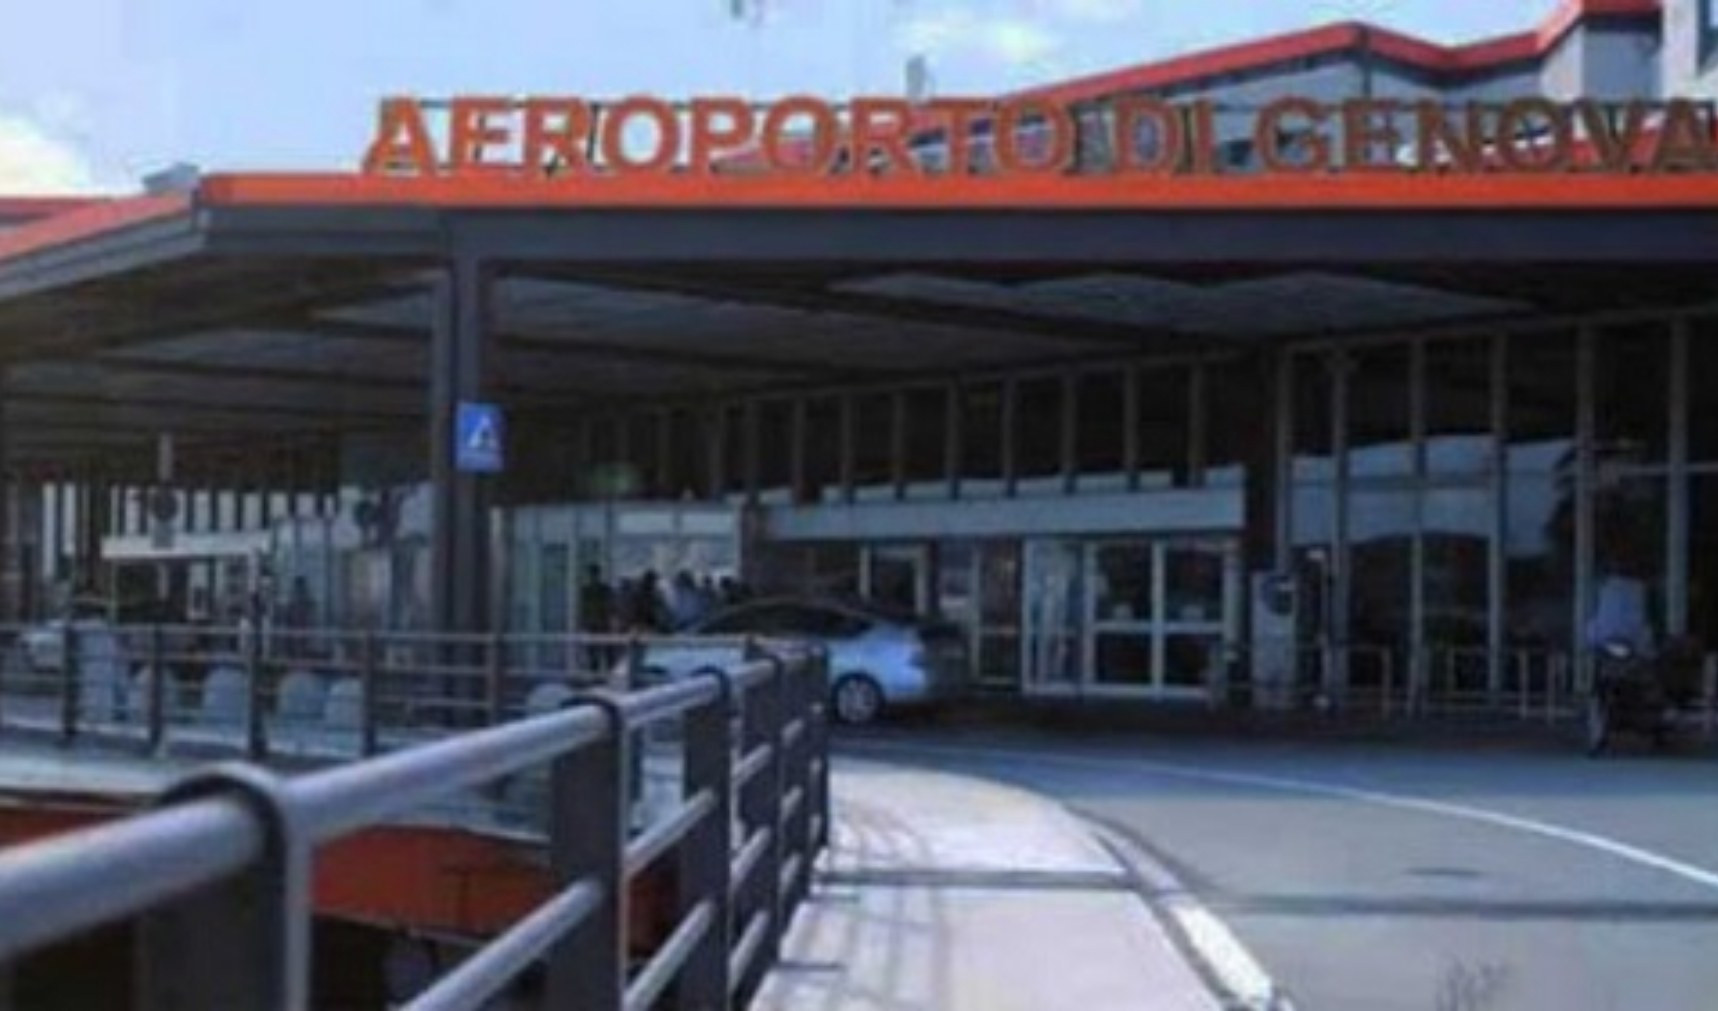 Covid, allarme Cina: tamponi negli aeroporti fino a fine gennaio